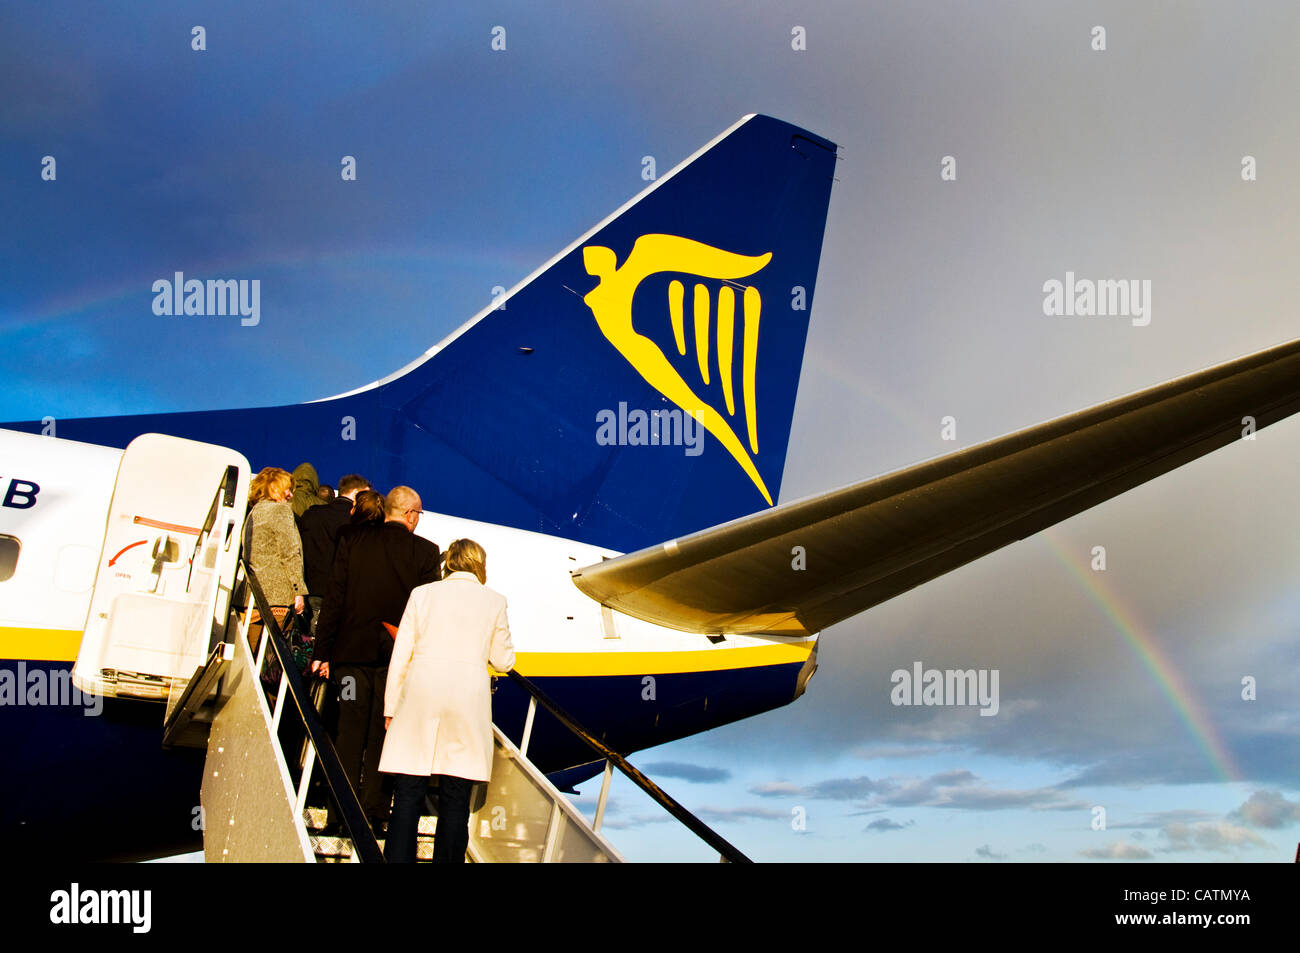 Ryanair passengers immagini e fotografie stock ad alta risoluzione - Alamy